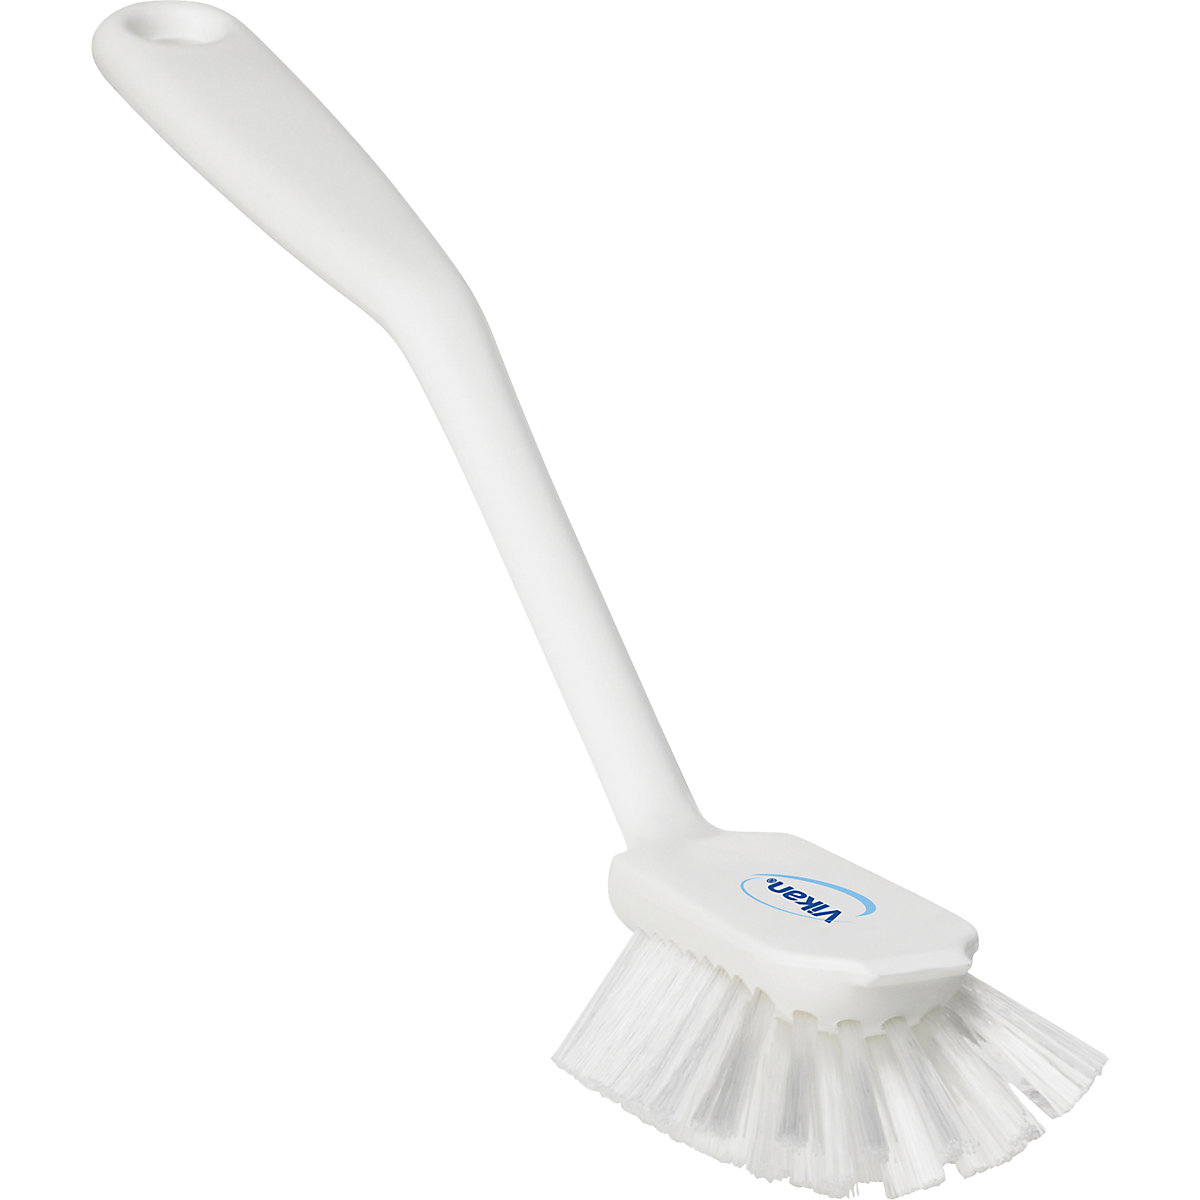 Vikan – Scrubbing brush with scraper edge, medium, pack of 20, white